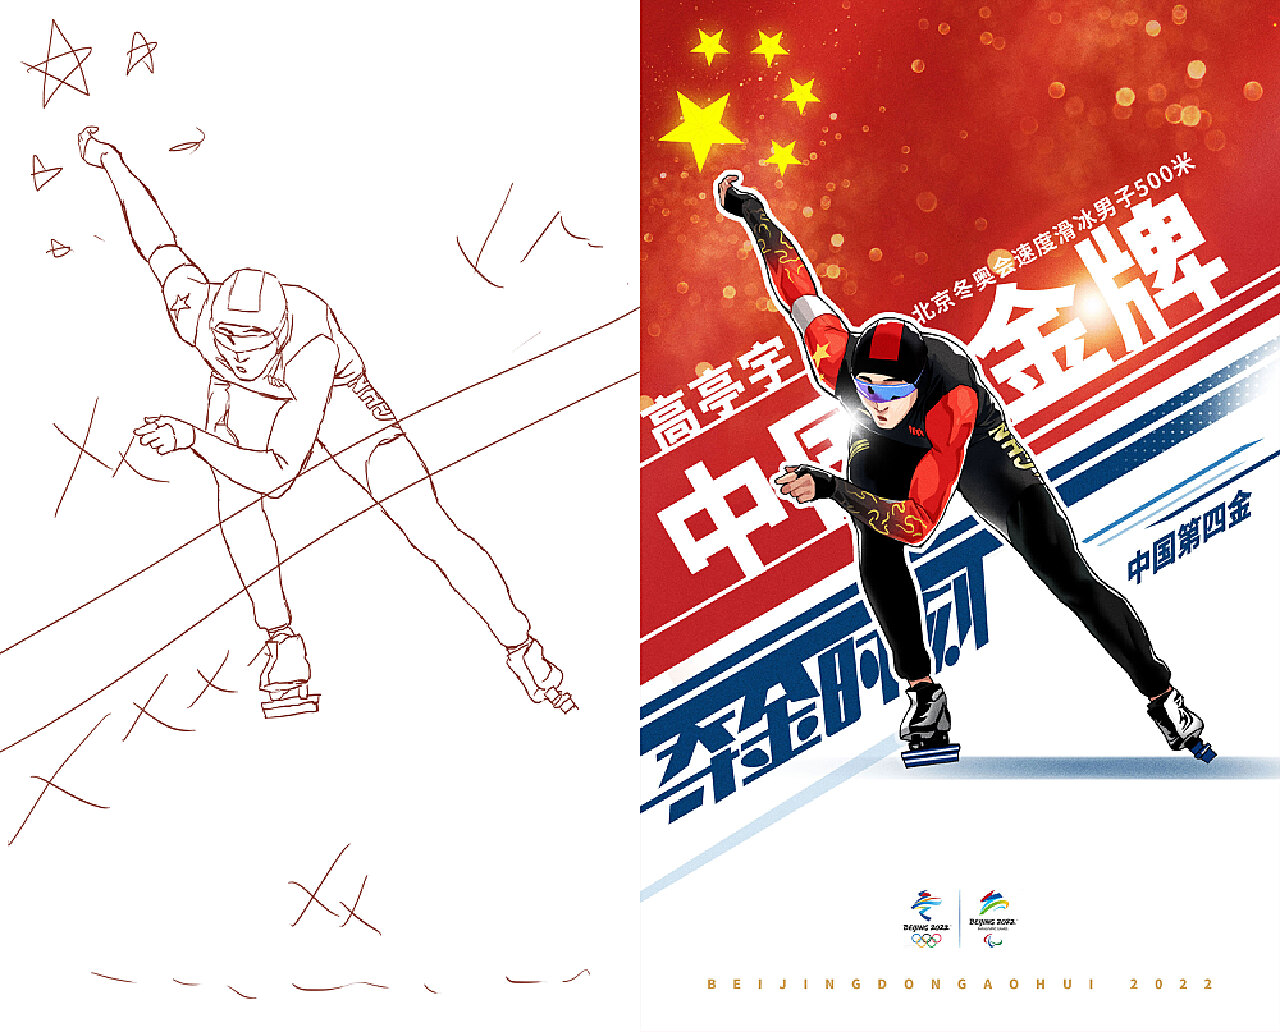 作者用画笔记录下了多幅冬奥会中国奥运健儿们的荣耀时刻